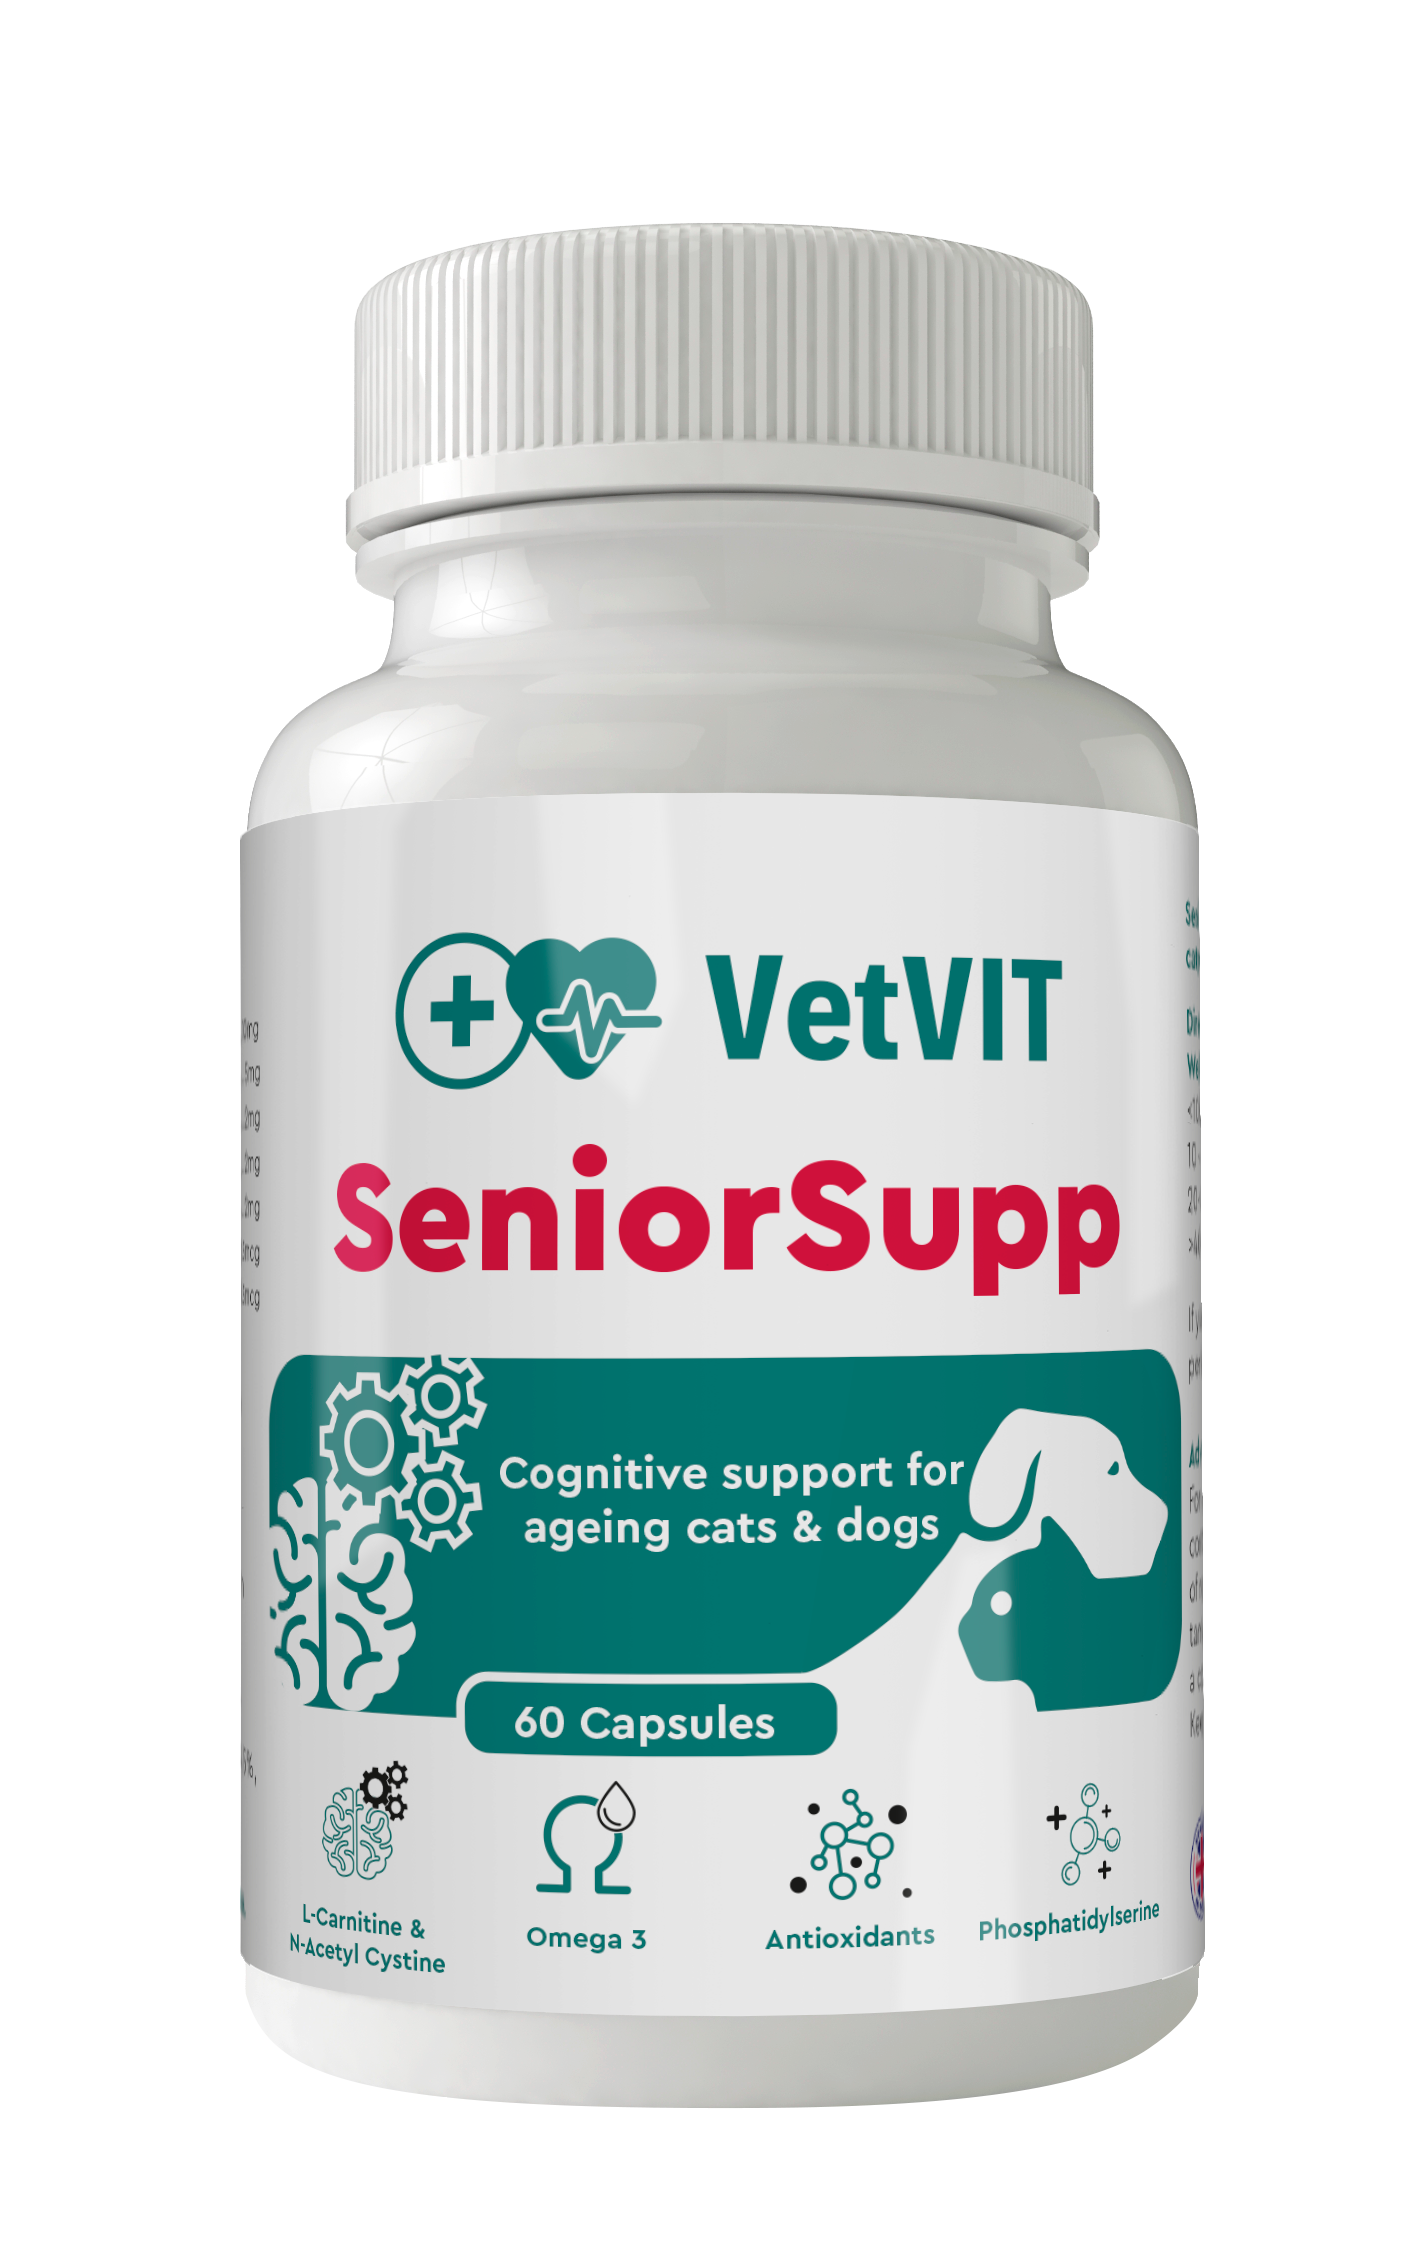 SeniorSUPP cognitive support